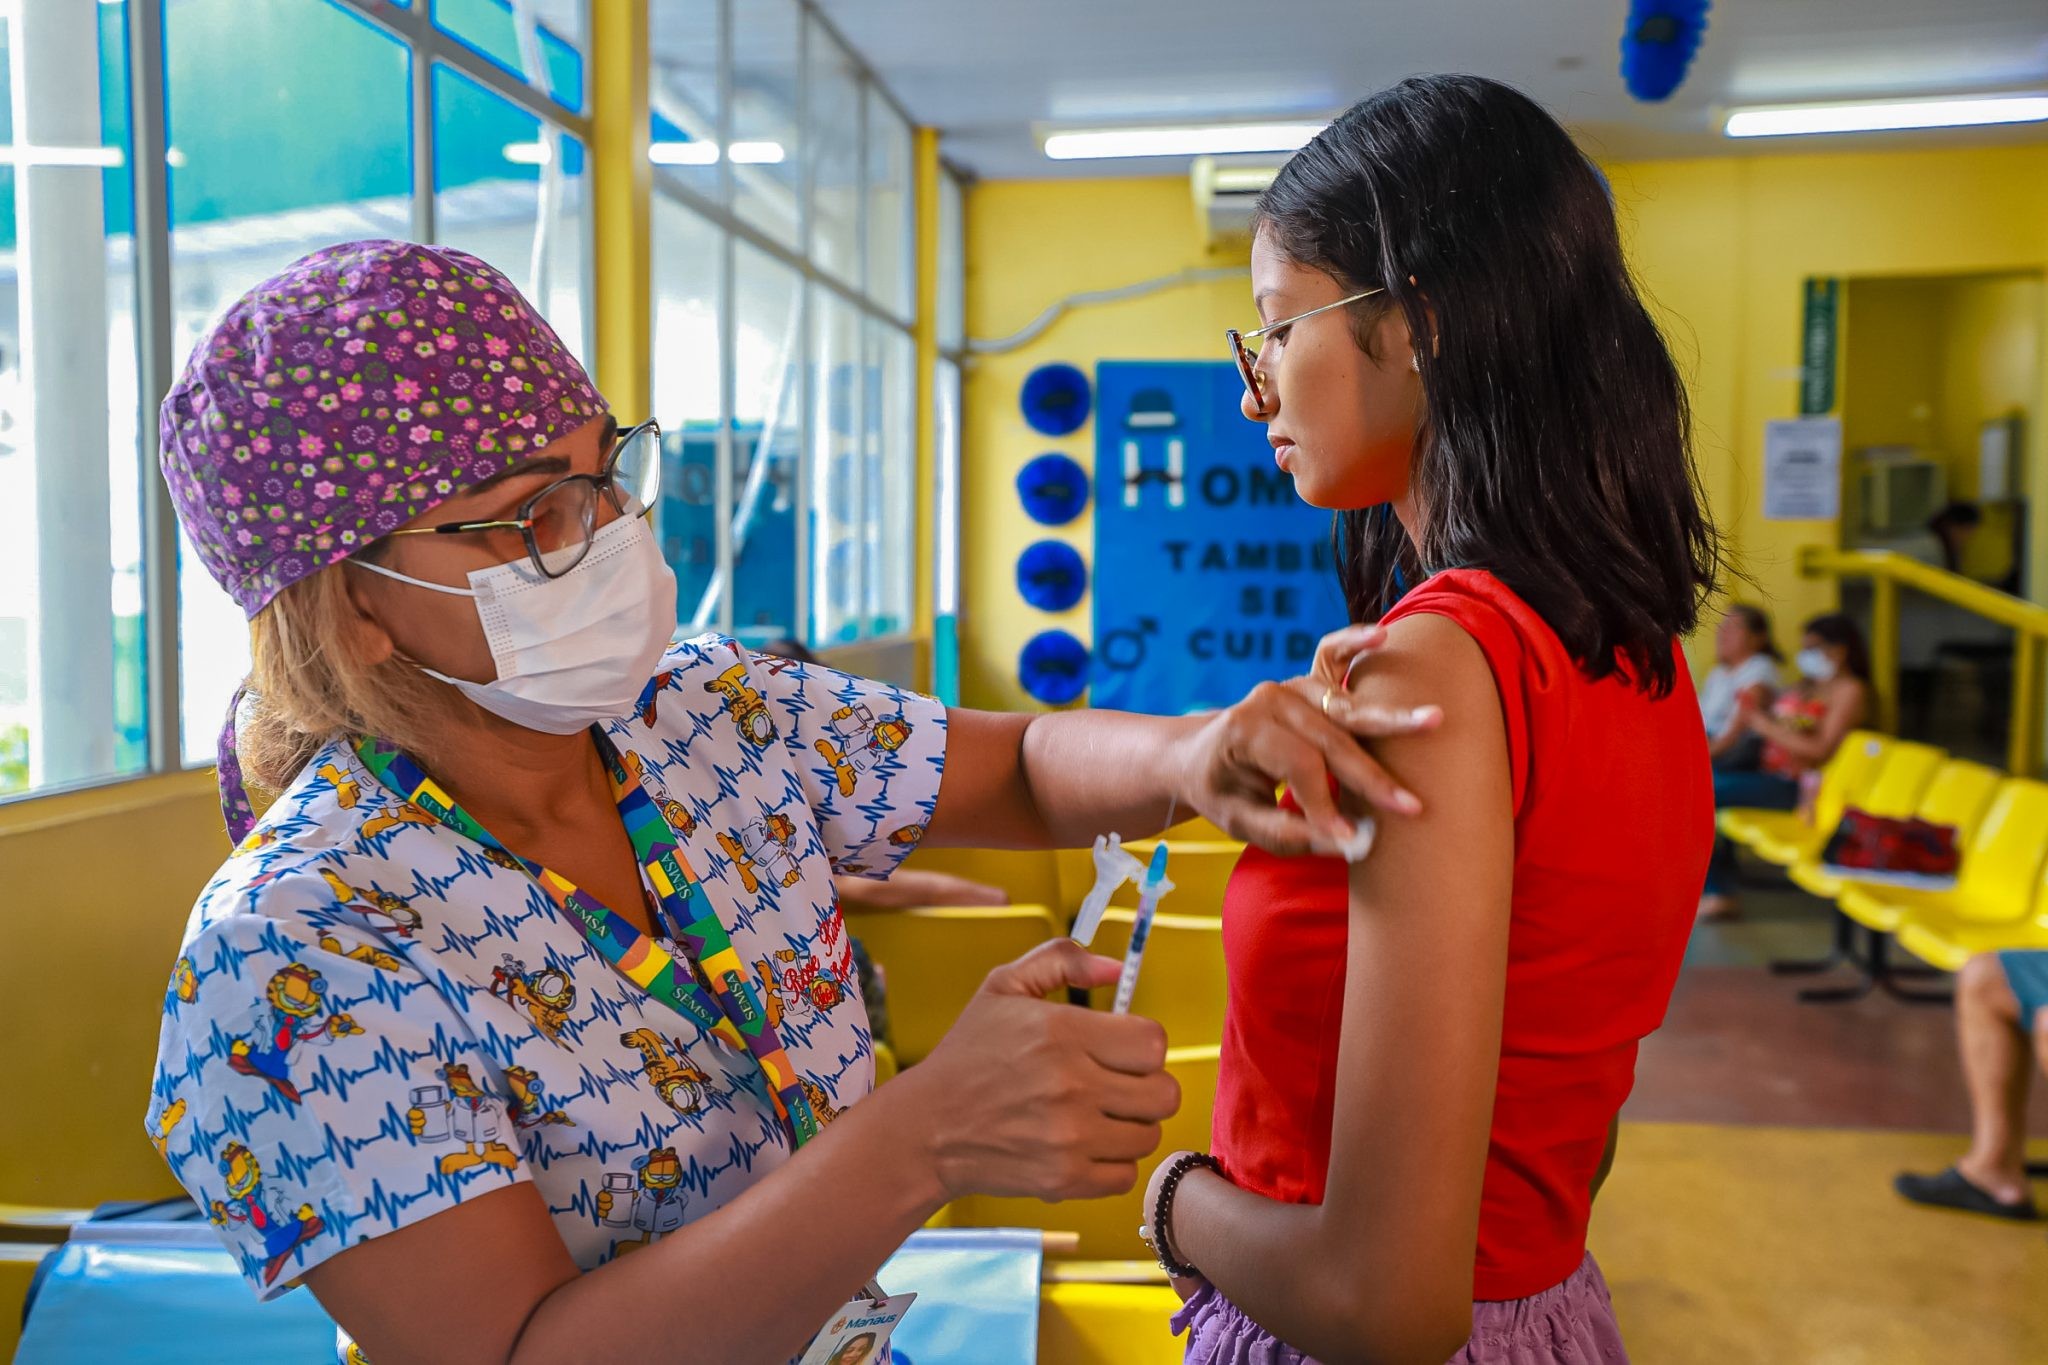 Manaus amplia vacinação contra dengue para pessoas de 4 a 59 anos em caráter temporário, diz Semsa